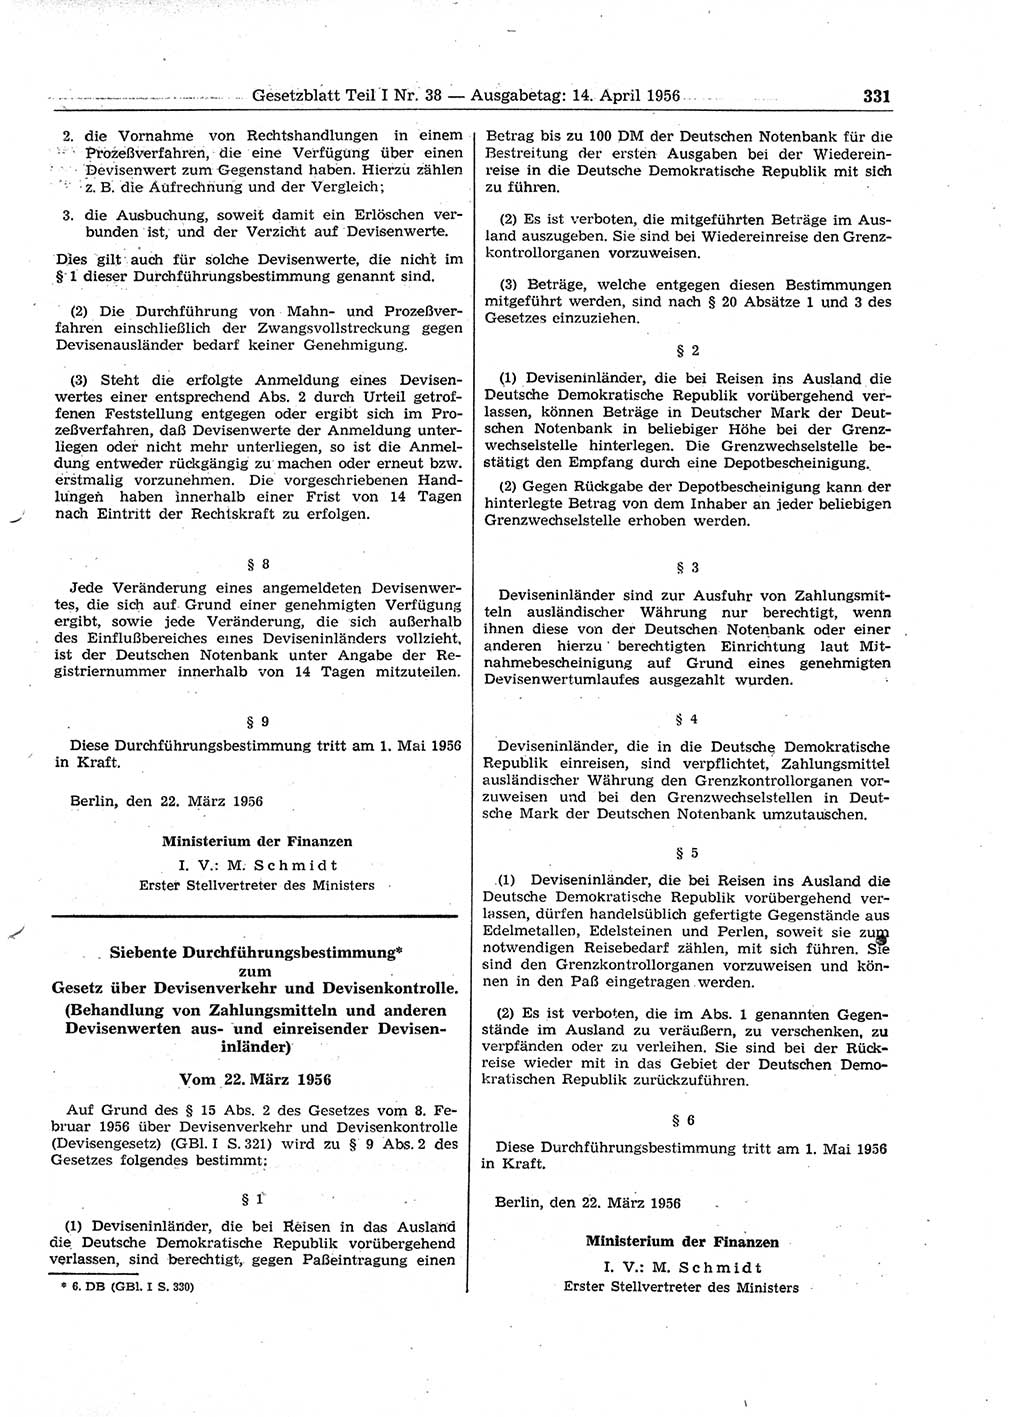 Gesetzblatt (GBl.) der Deutschen Demokratischen Republik (DDR) Teil Ⅰ 1956, Seite 331 (GBl. DDR Ⅰ 1956, S. 331)